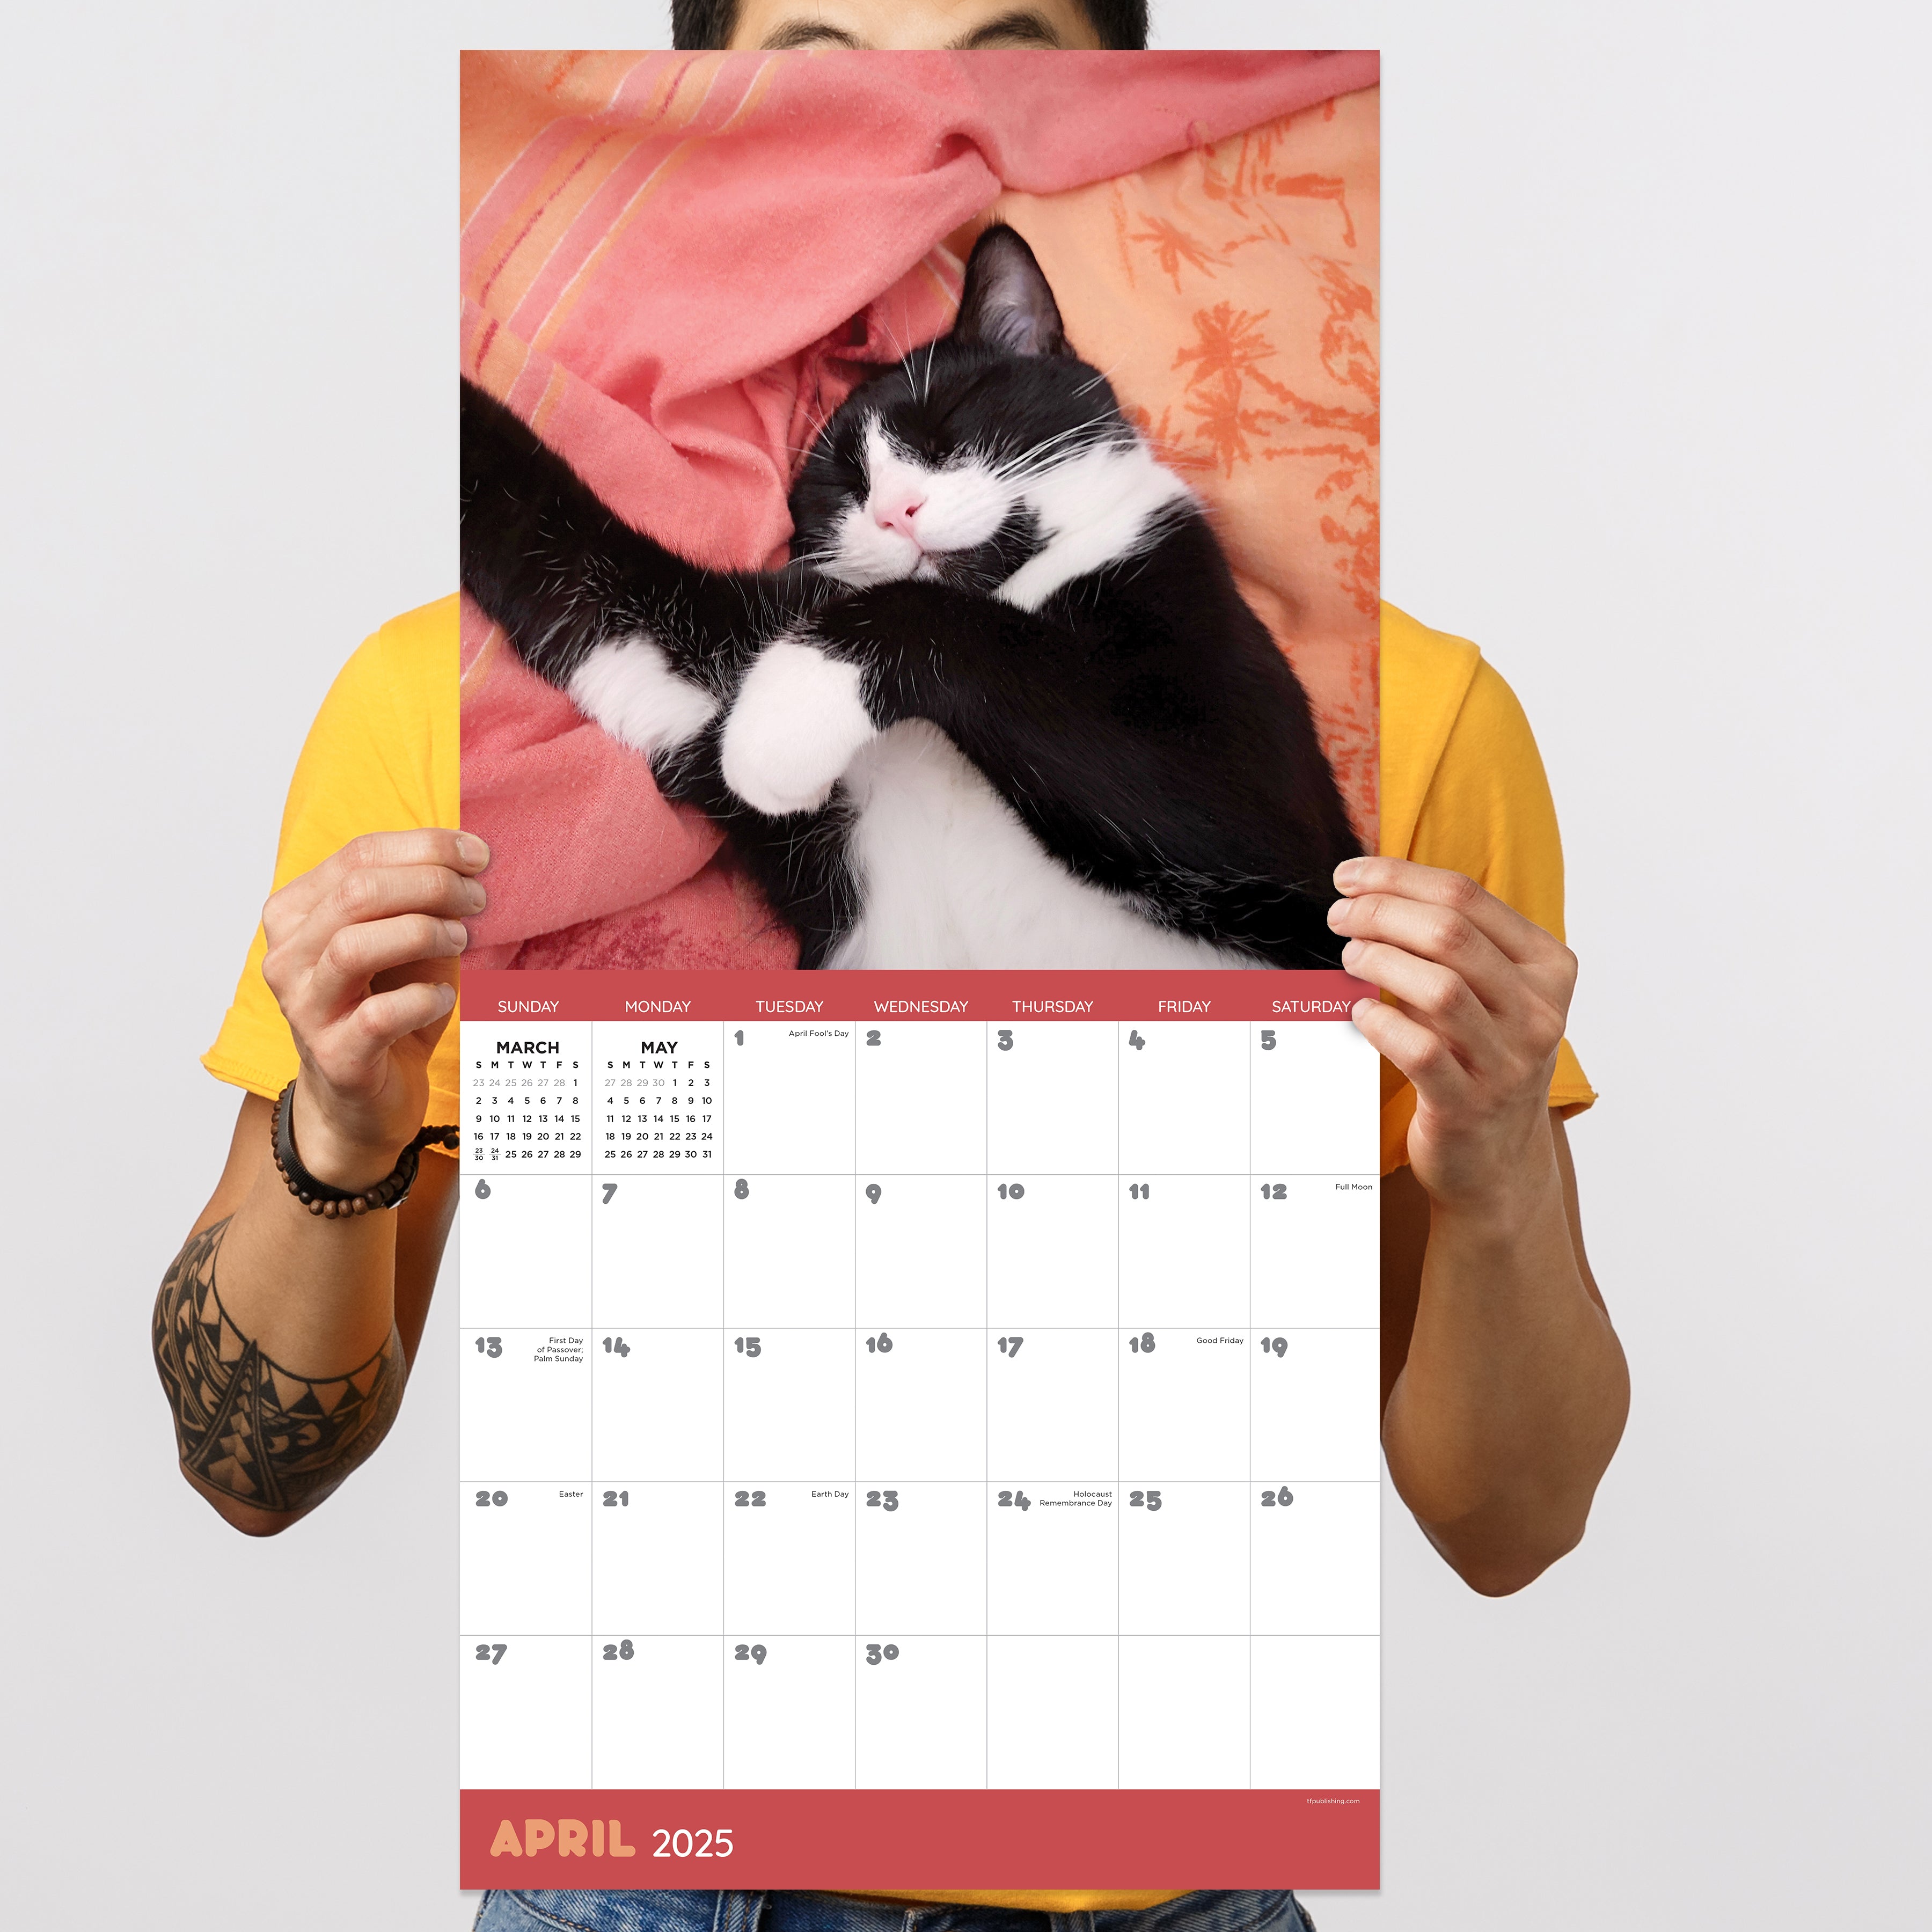 2025 Cat Dreams - Square Wall Calendar